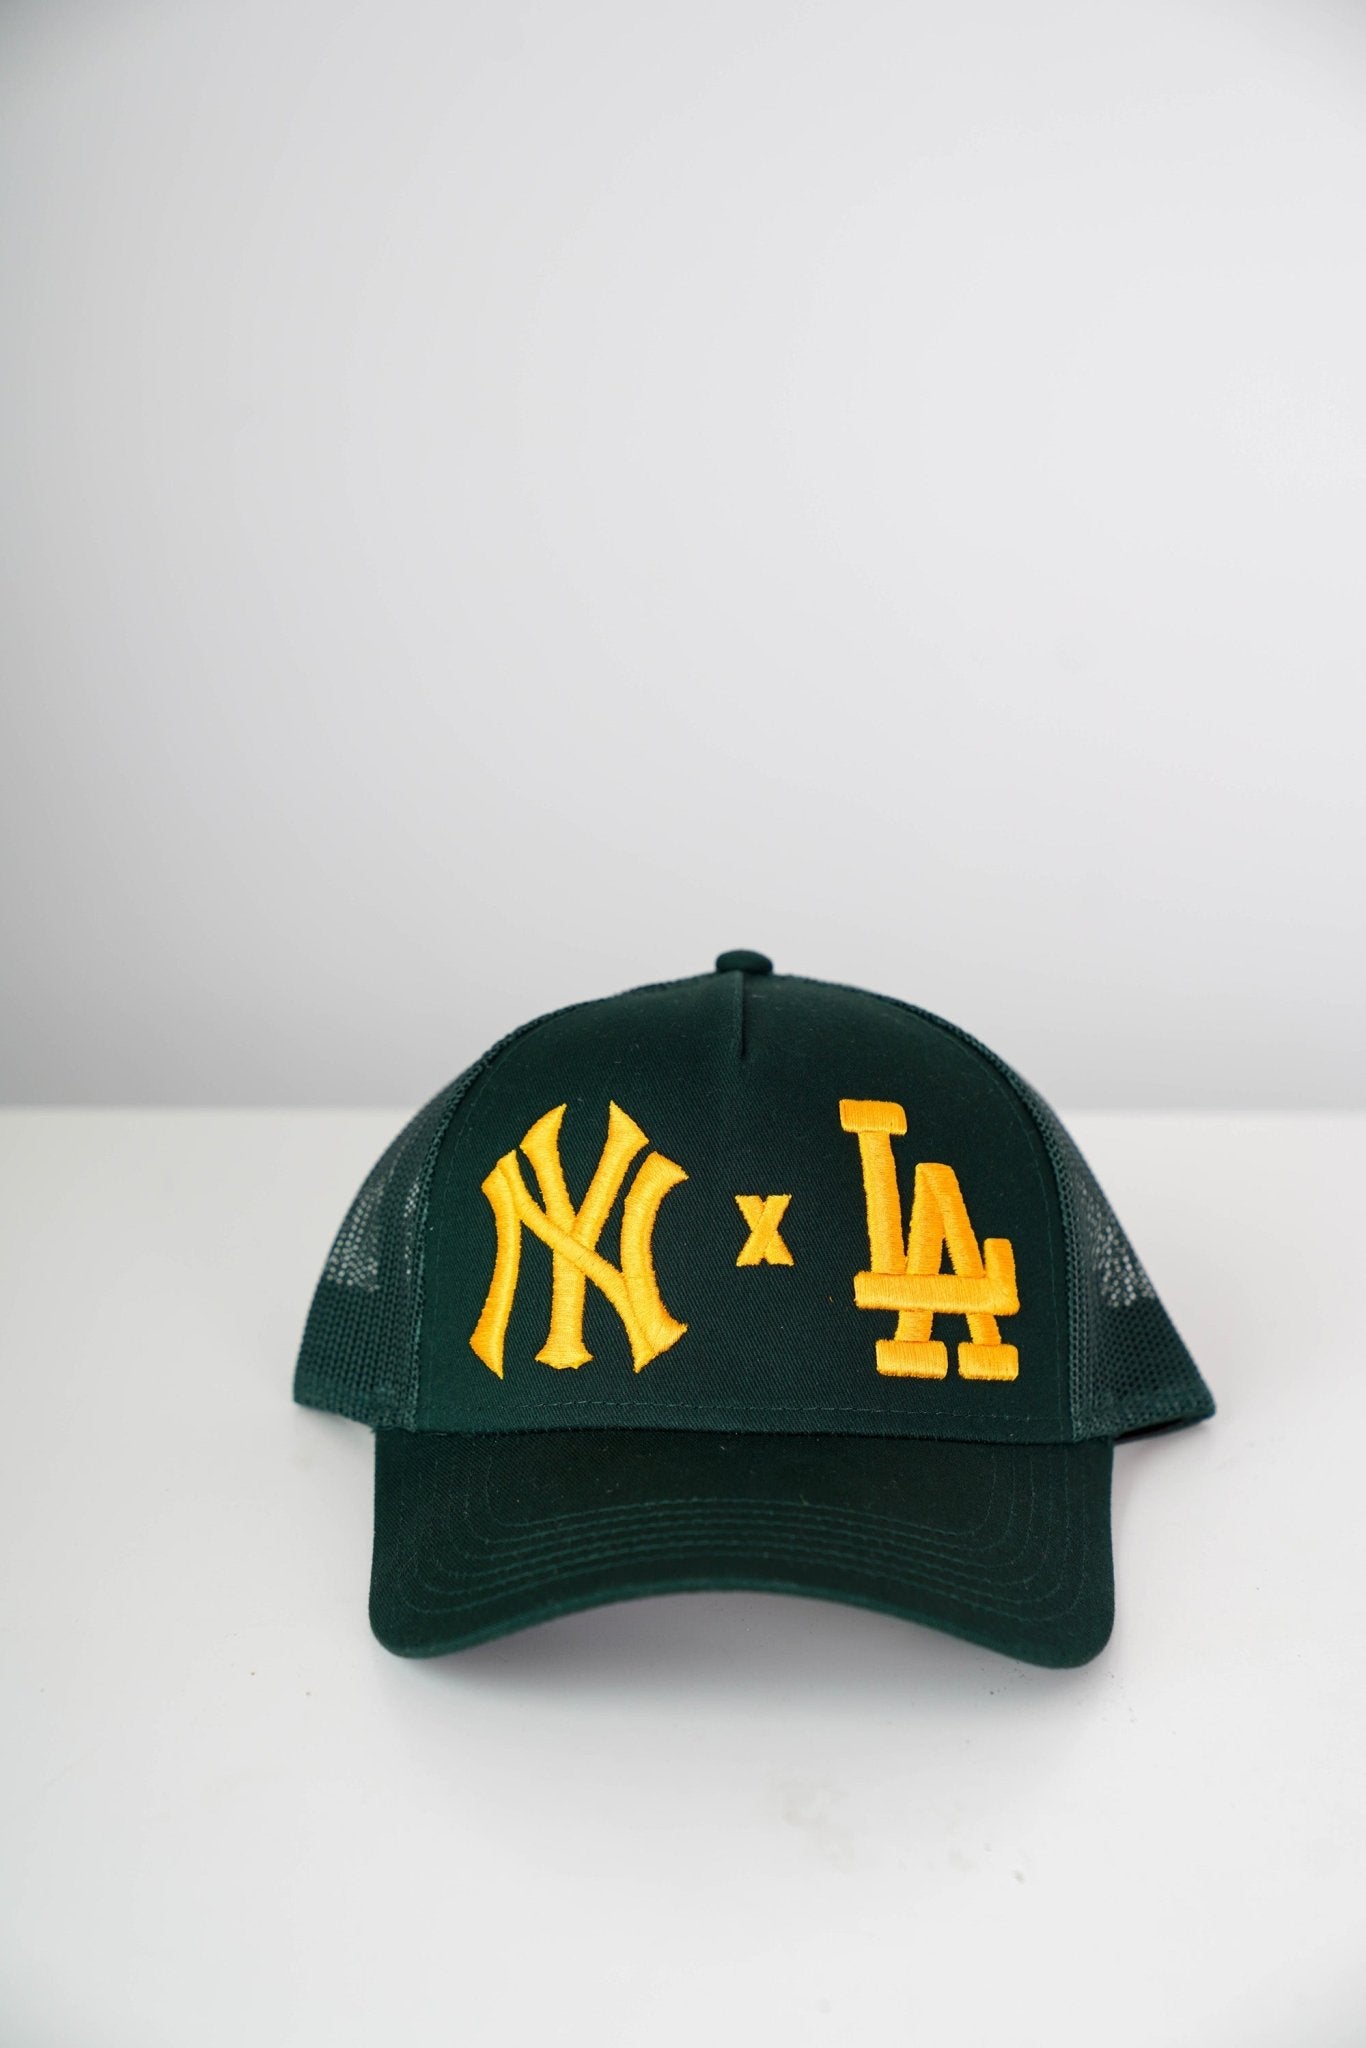 Green NY X LA, Men's hat, Trucker Cap